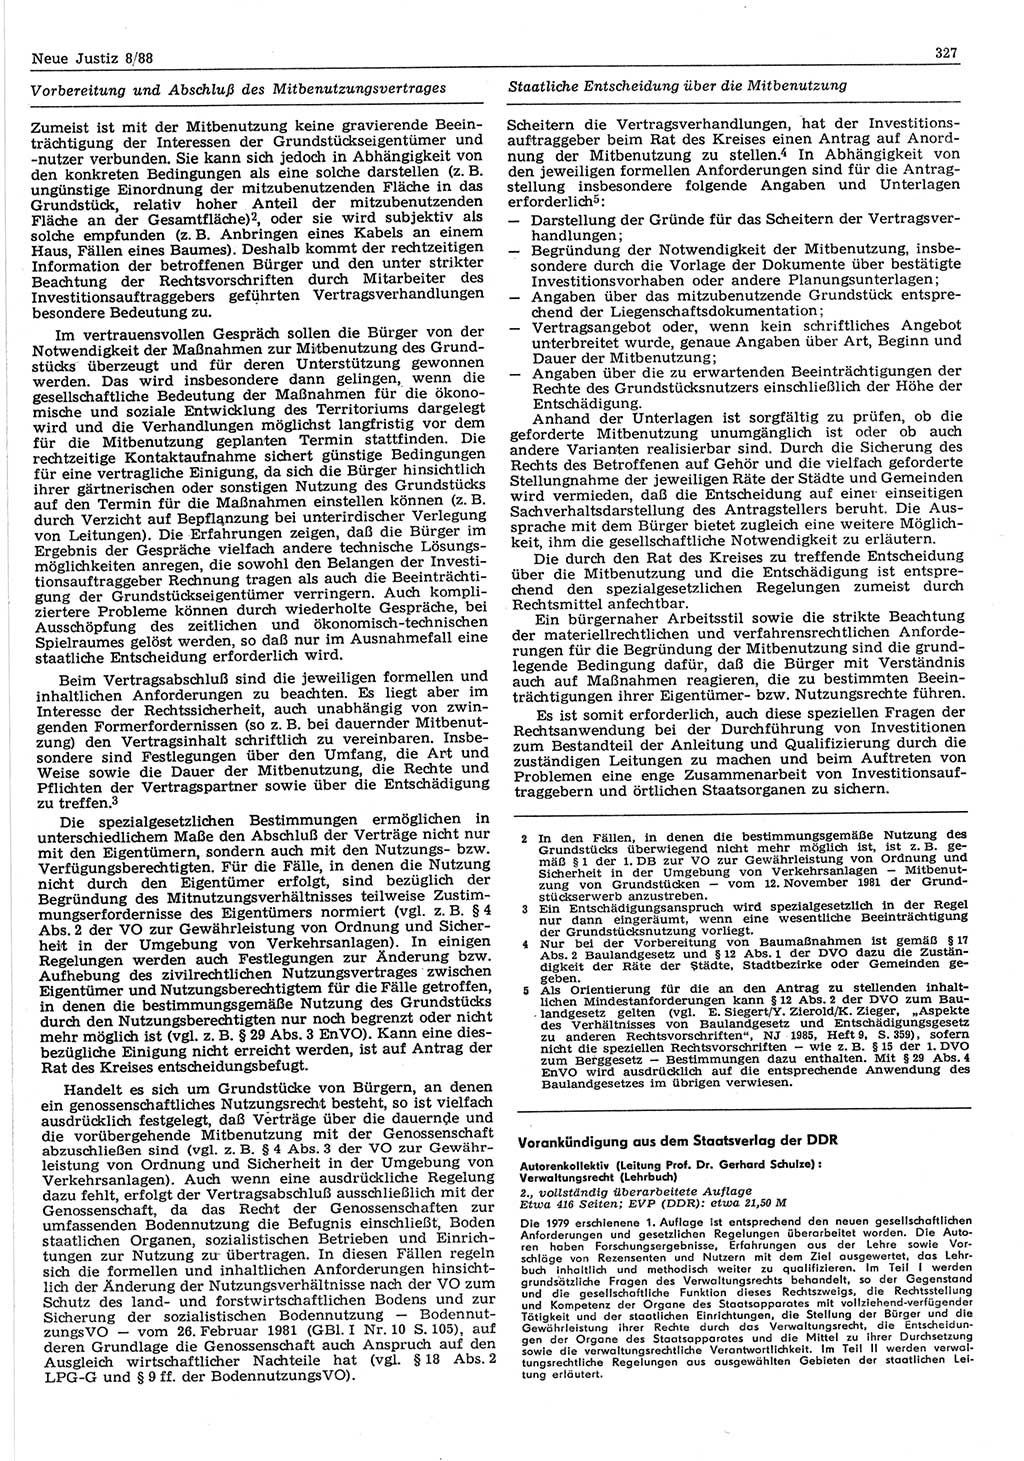 Neue Justiz (NJ), Zeitschrift für sozialistisches Recht und Gesetzlichkeit [Deutsche Demokratische Republik (DDR)], 42. Jahrgang 1988, Seite 327 (NJ DDR 1988, S. 327)